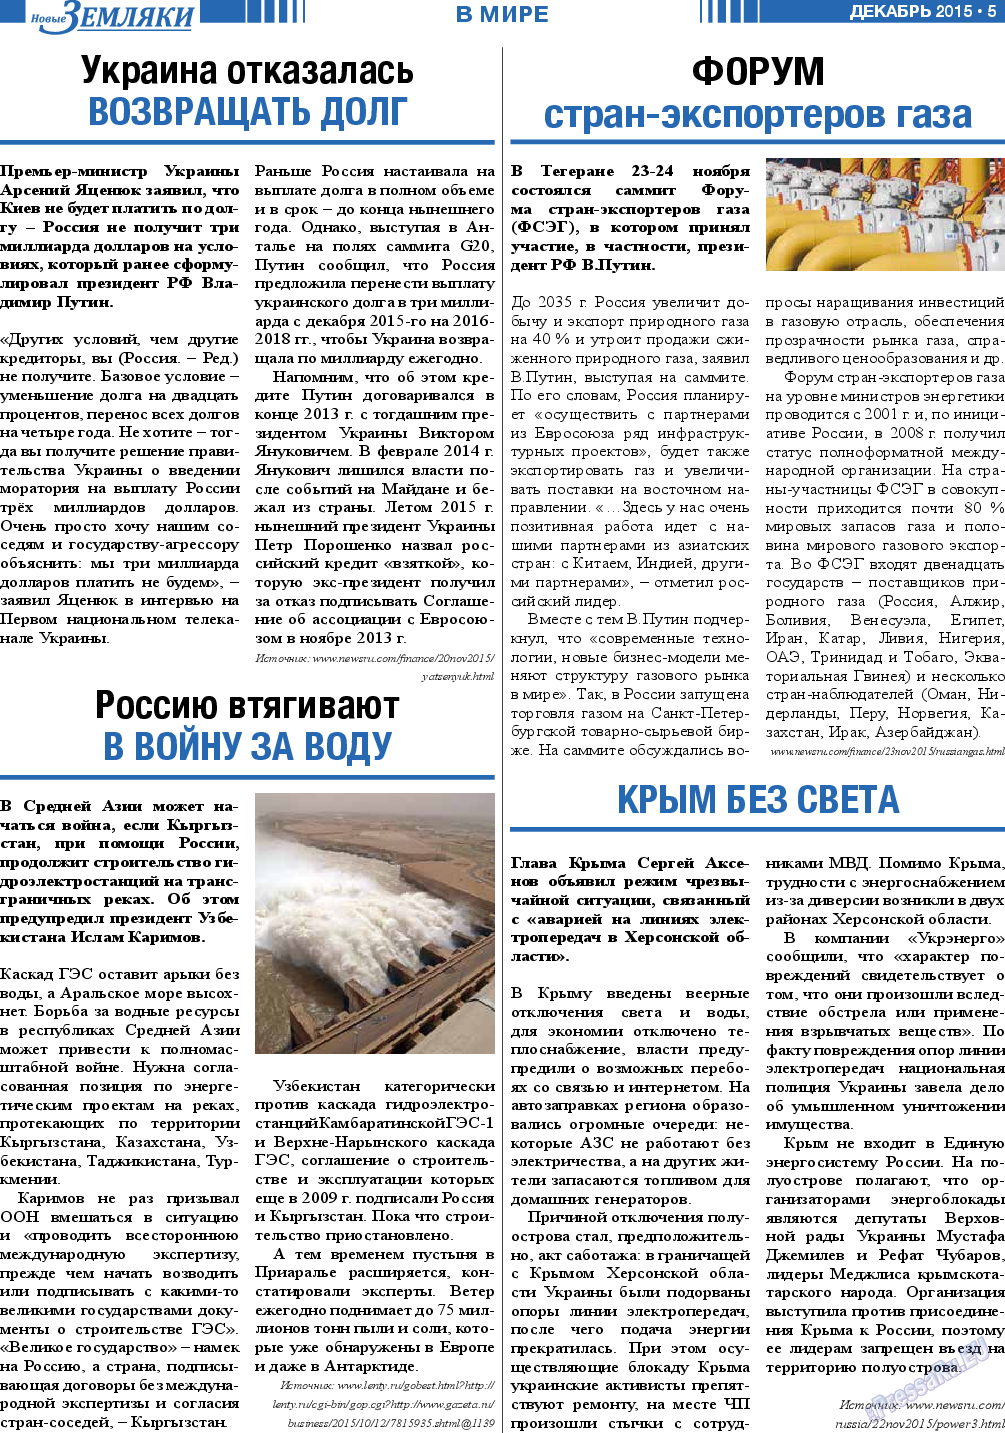 Новые Земляки, газета. 2015 №12 стр.5